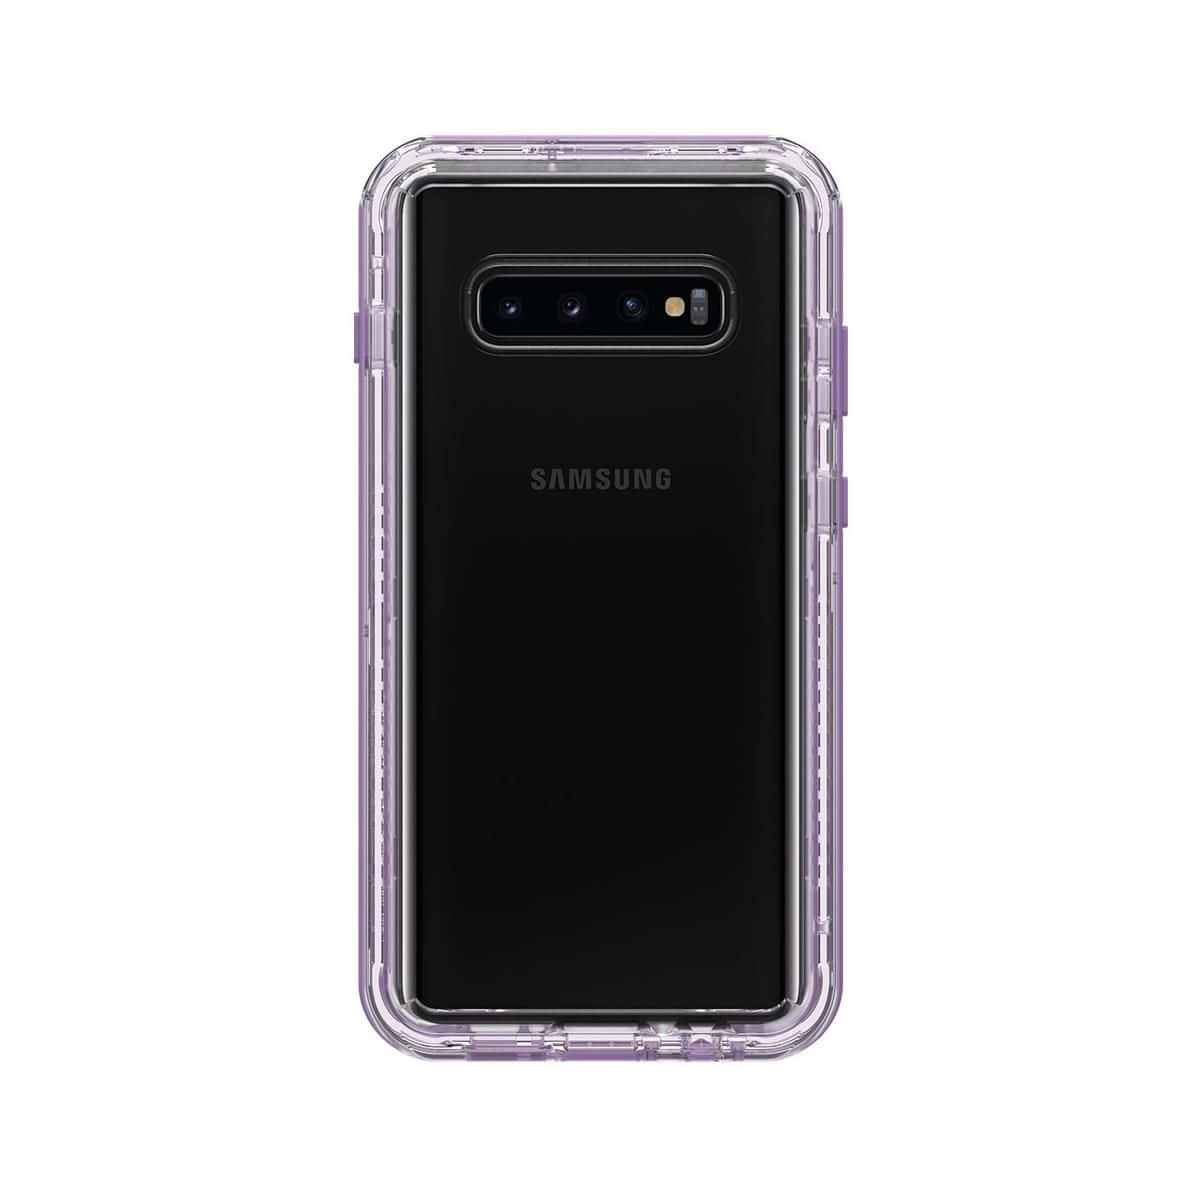 Ilnuovissimo Samsung Galaxy S10